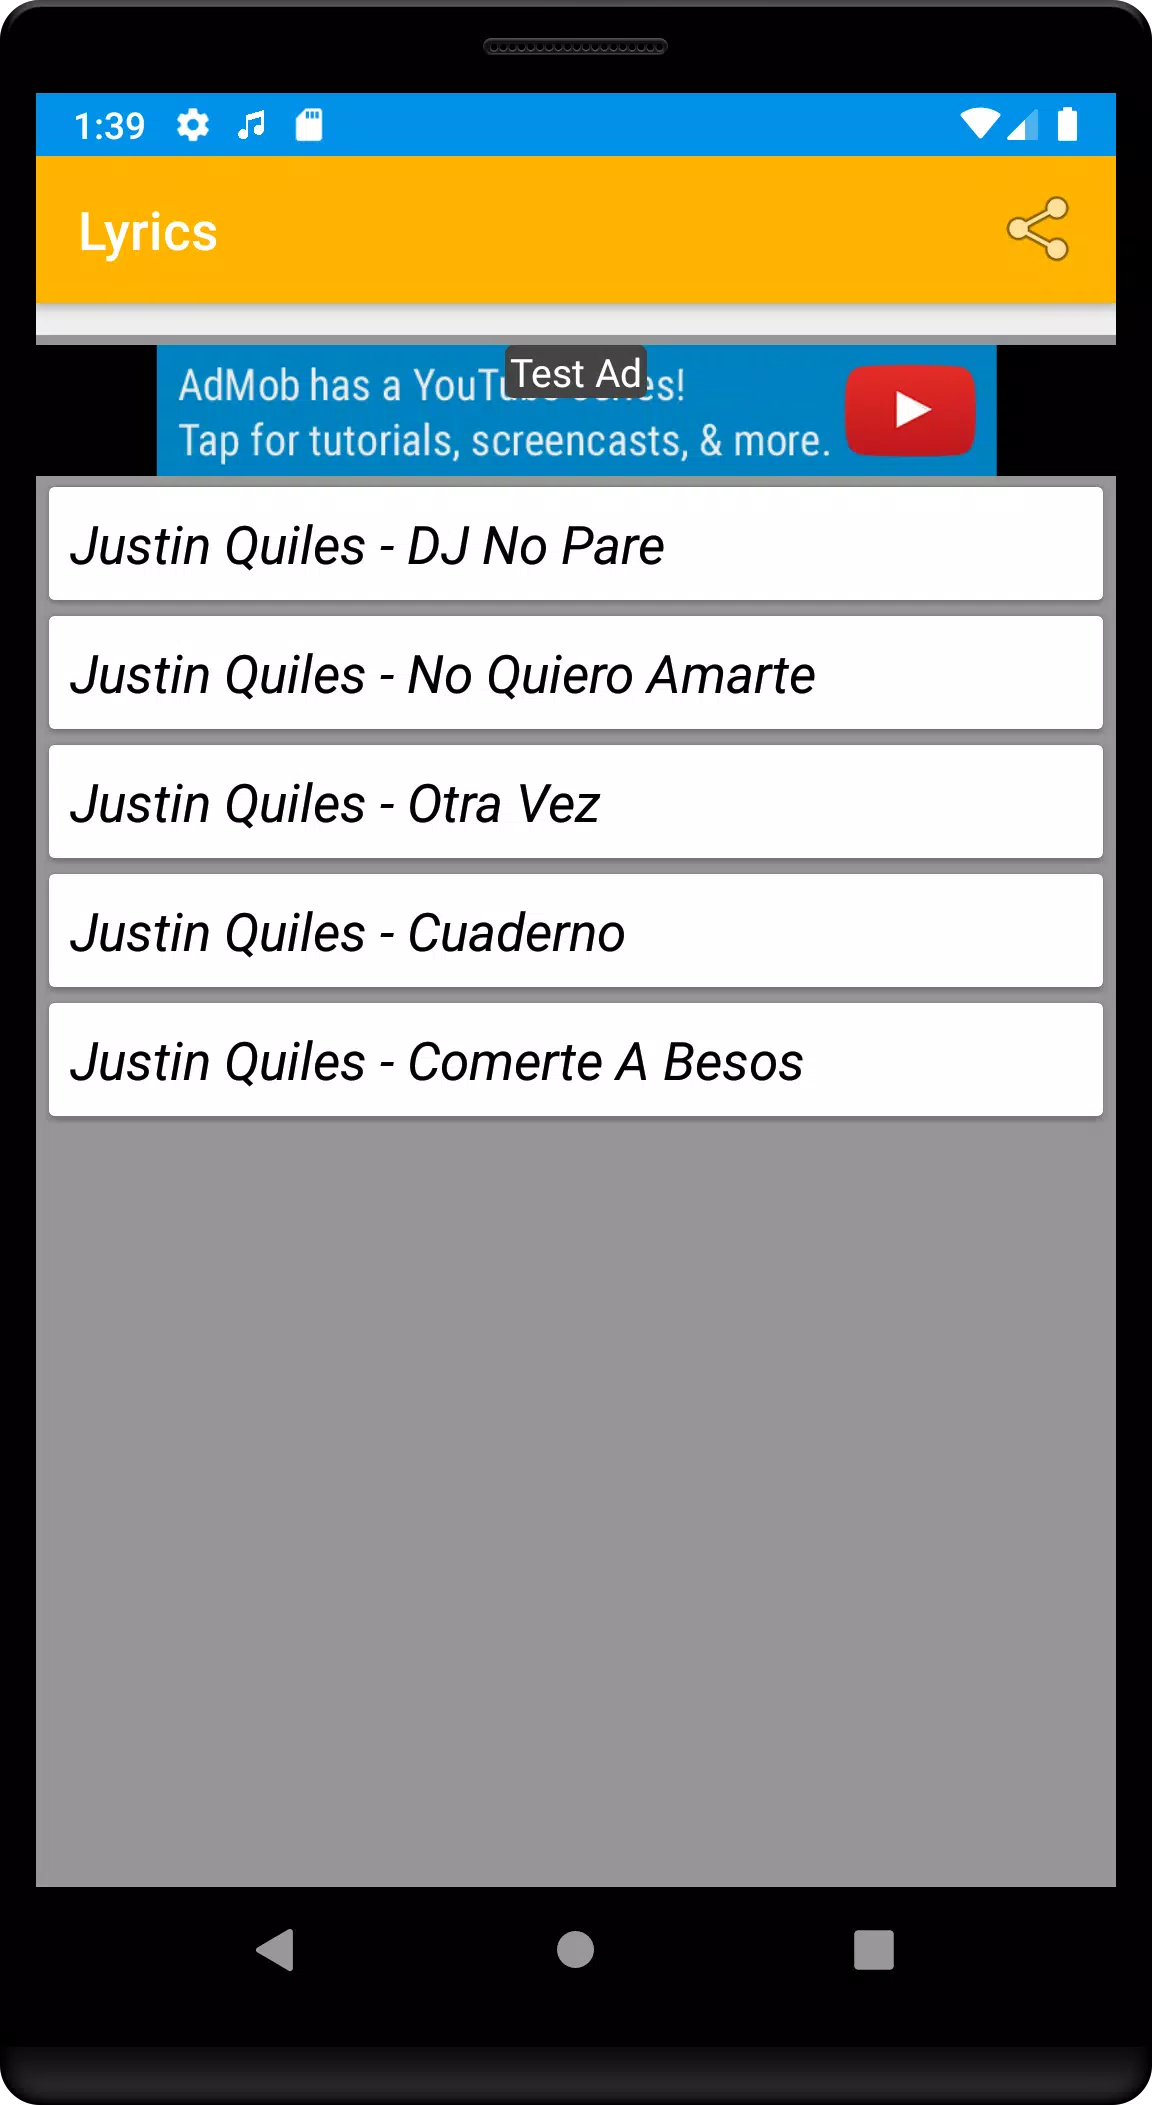 Descarga de APK de dj no pare descargar - Justin Quiles offline Mp3 para  Android